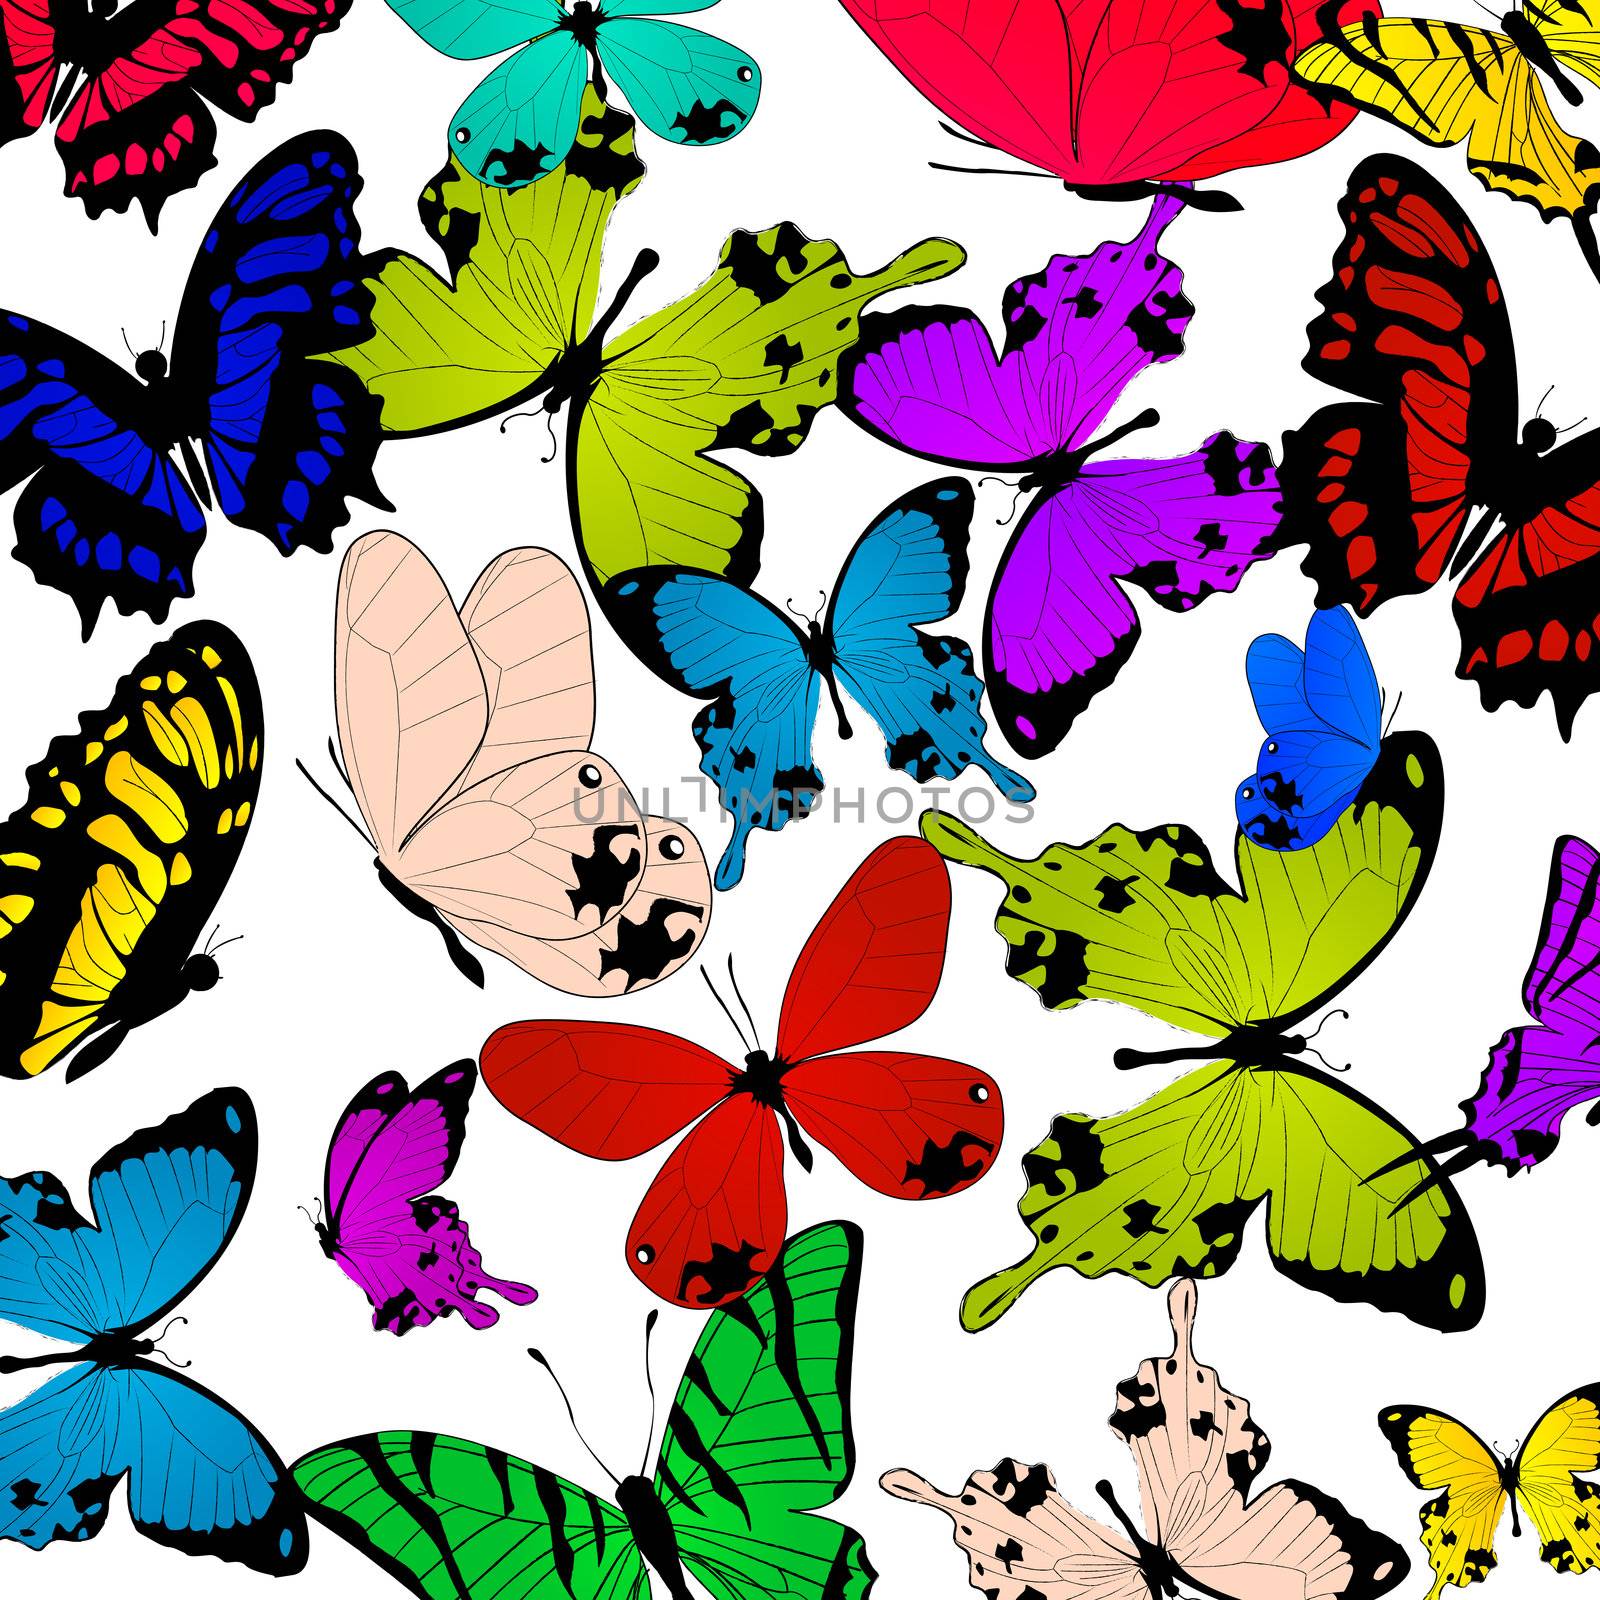 Butterflies by Lirch